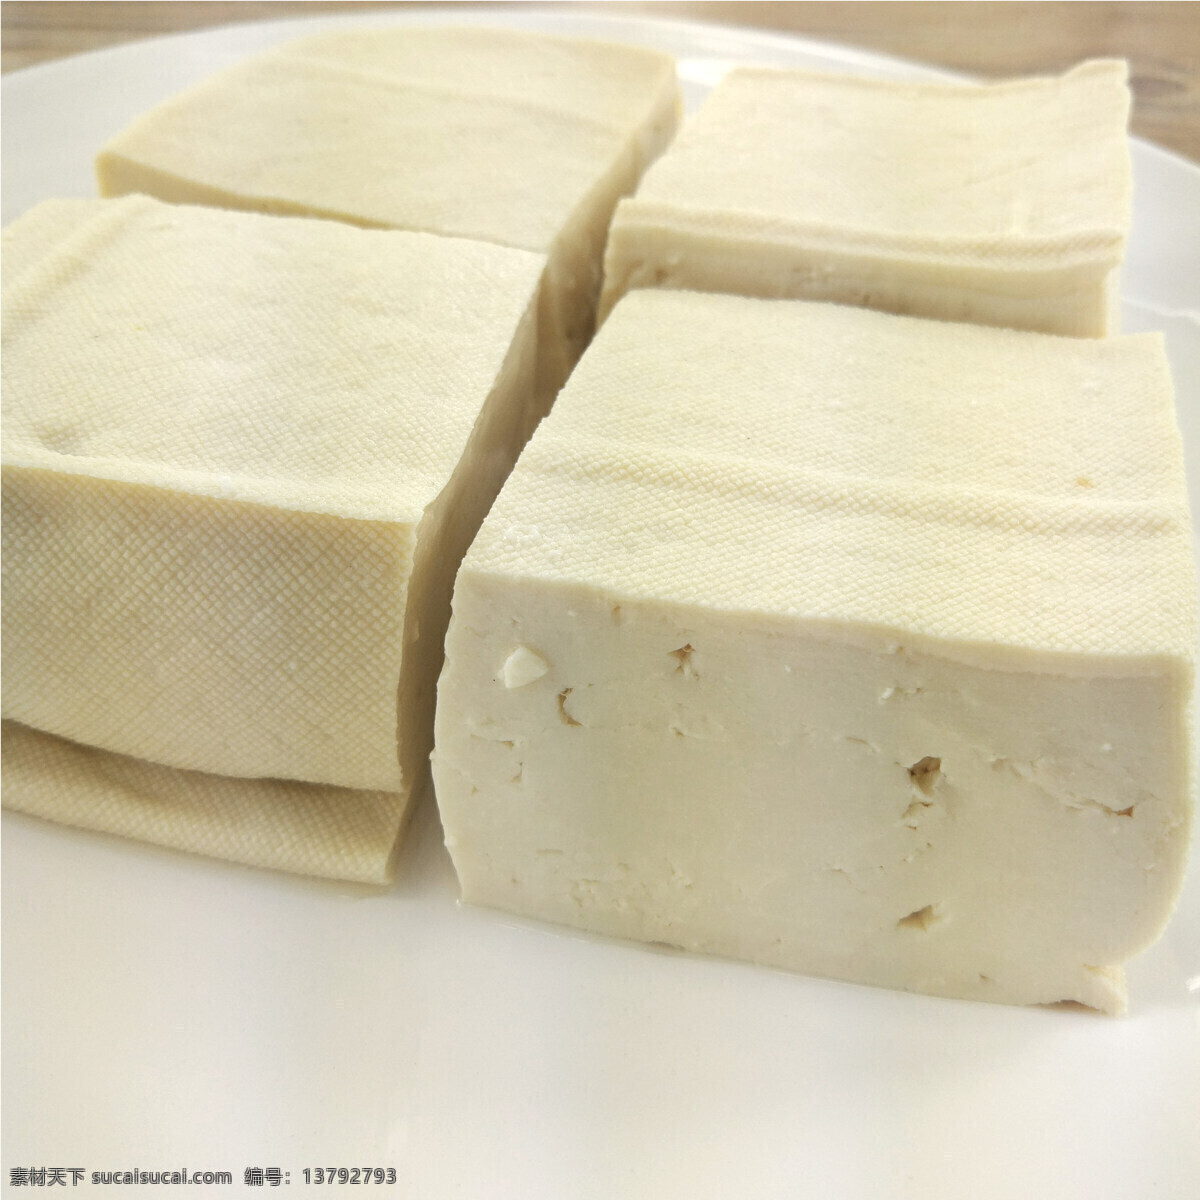 白豆腐 水豆腐 豆腐 盐水豆腐 老豆腐 餐饮美食 食物原料